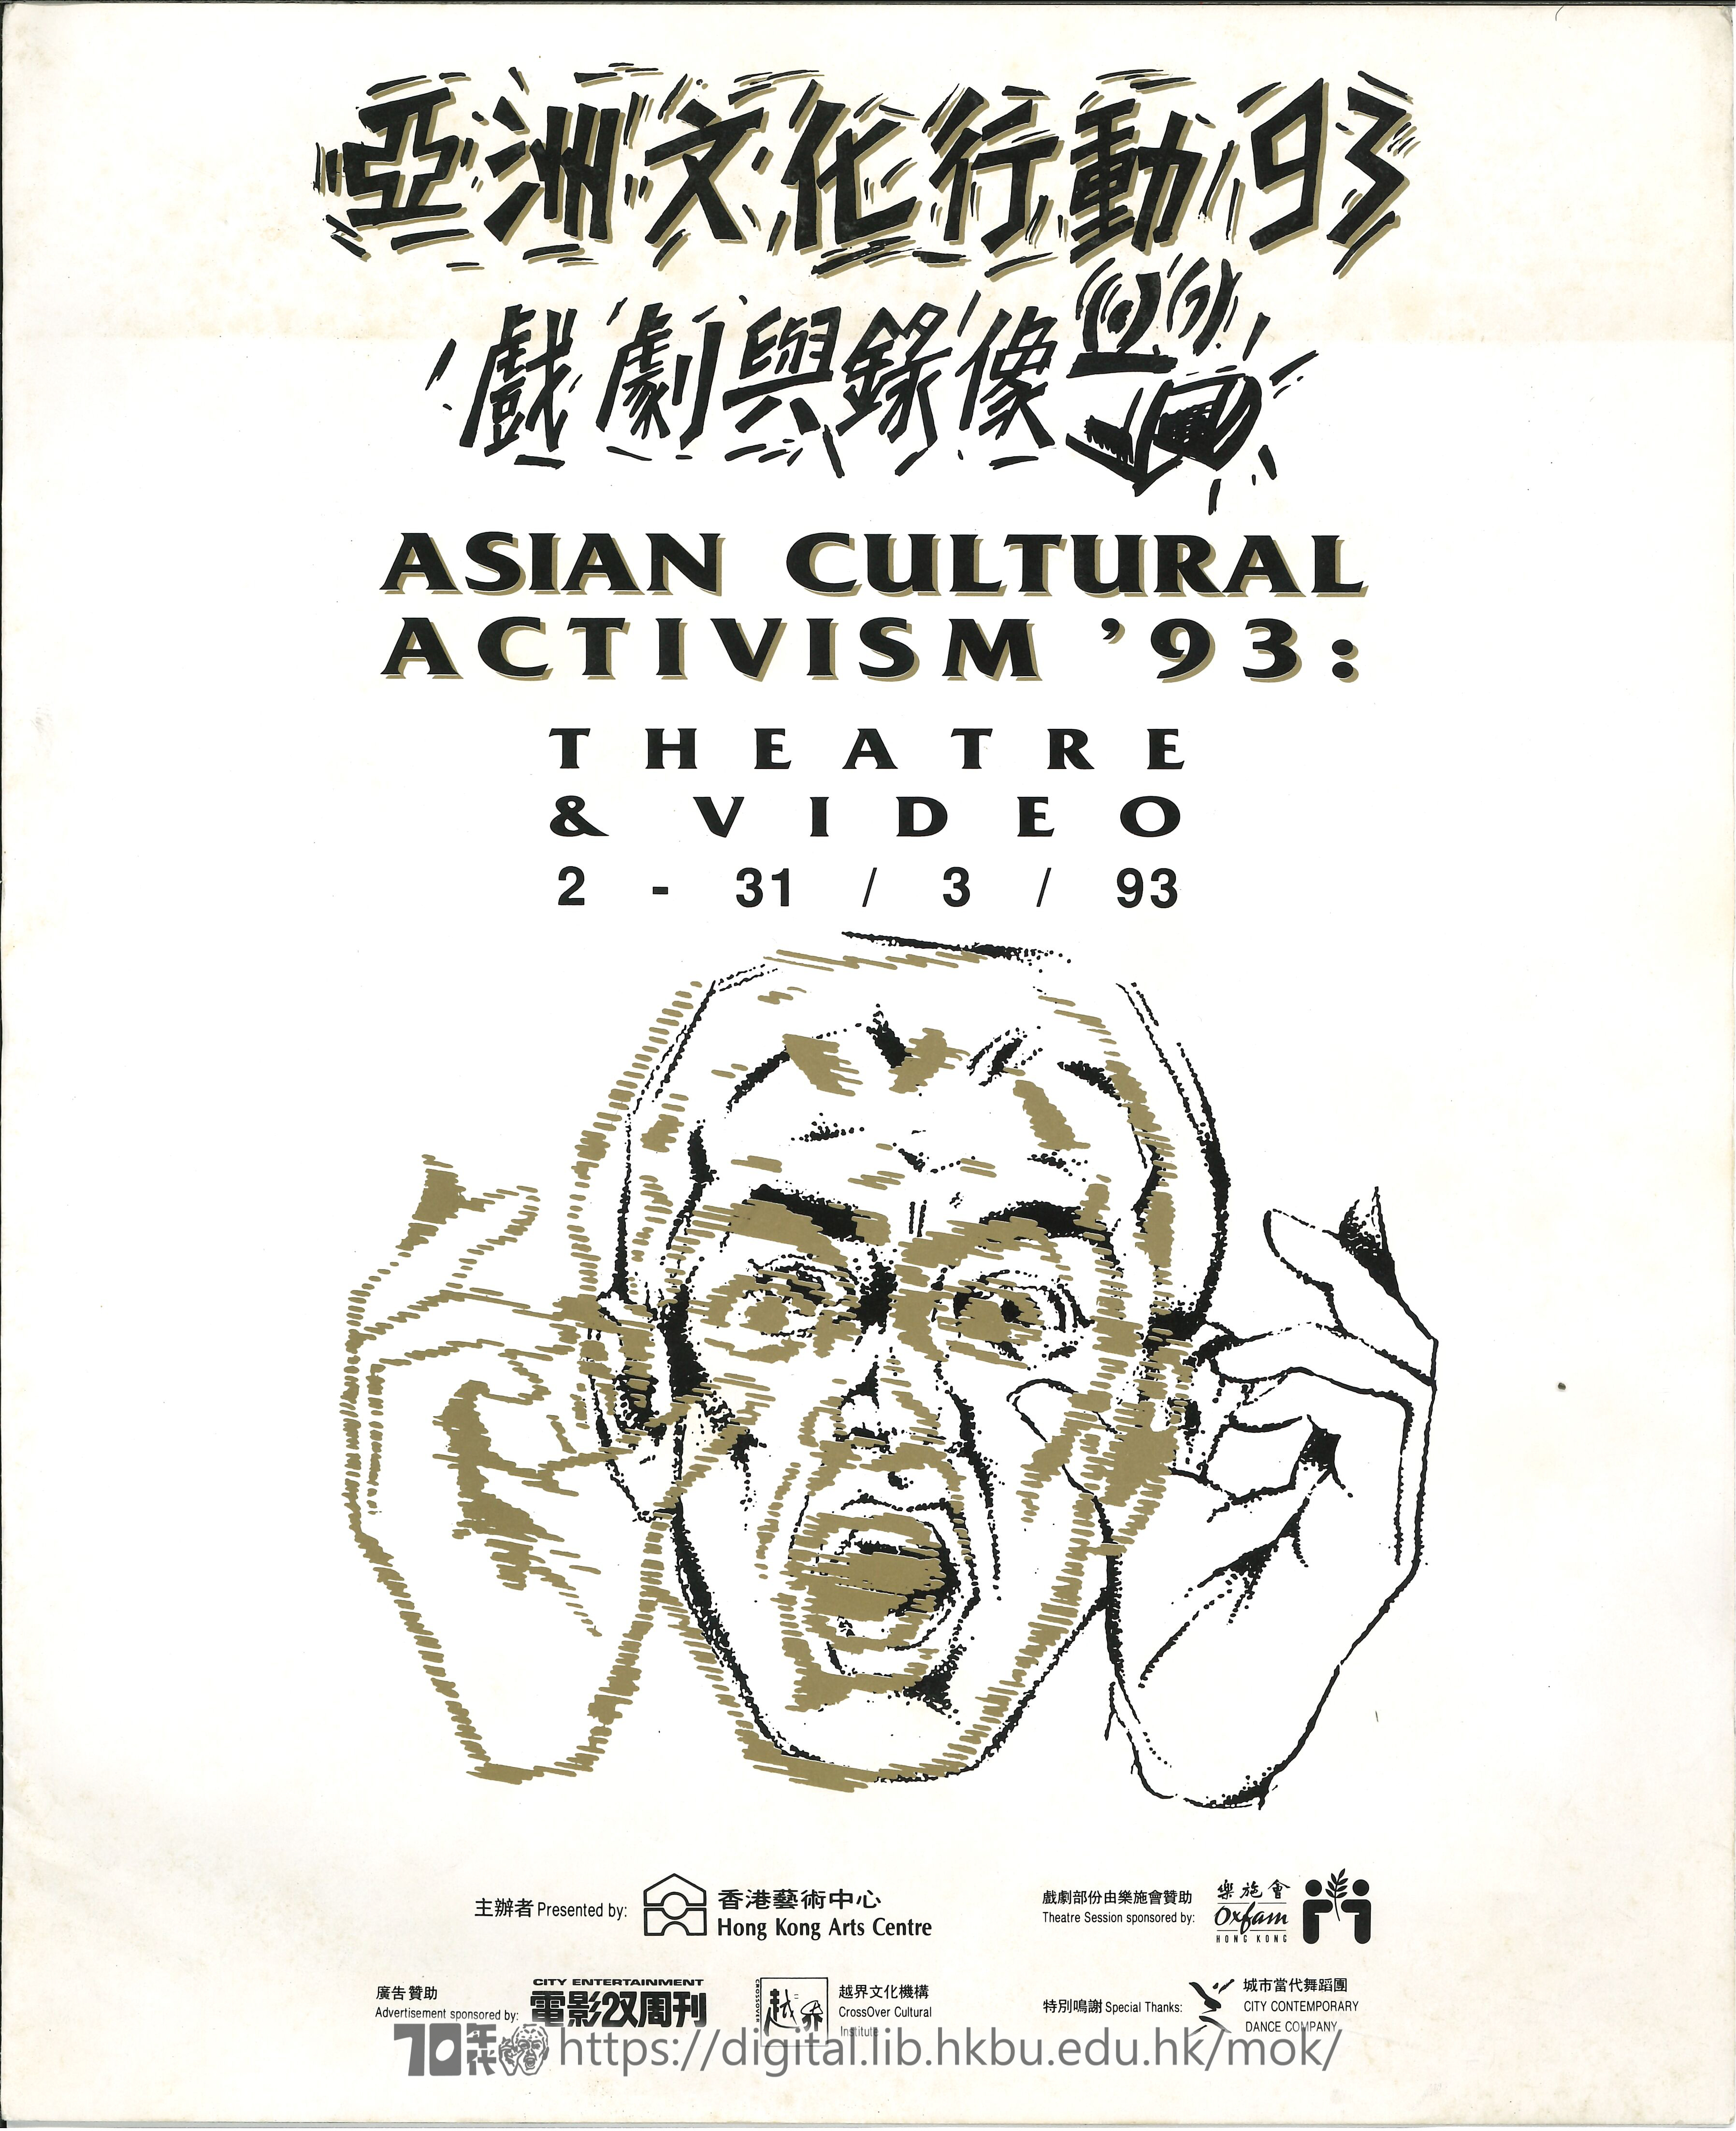 第二屆亞洲民眾戲劇節  亞洲文化行動 93 戲劇與錄像(第二届亞洲民衆戲劇節 )小冊子  